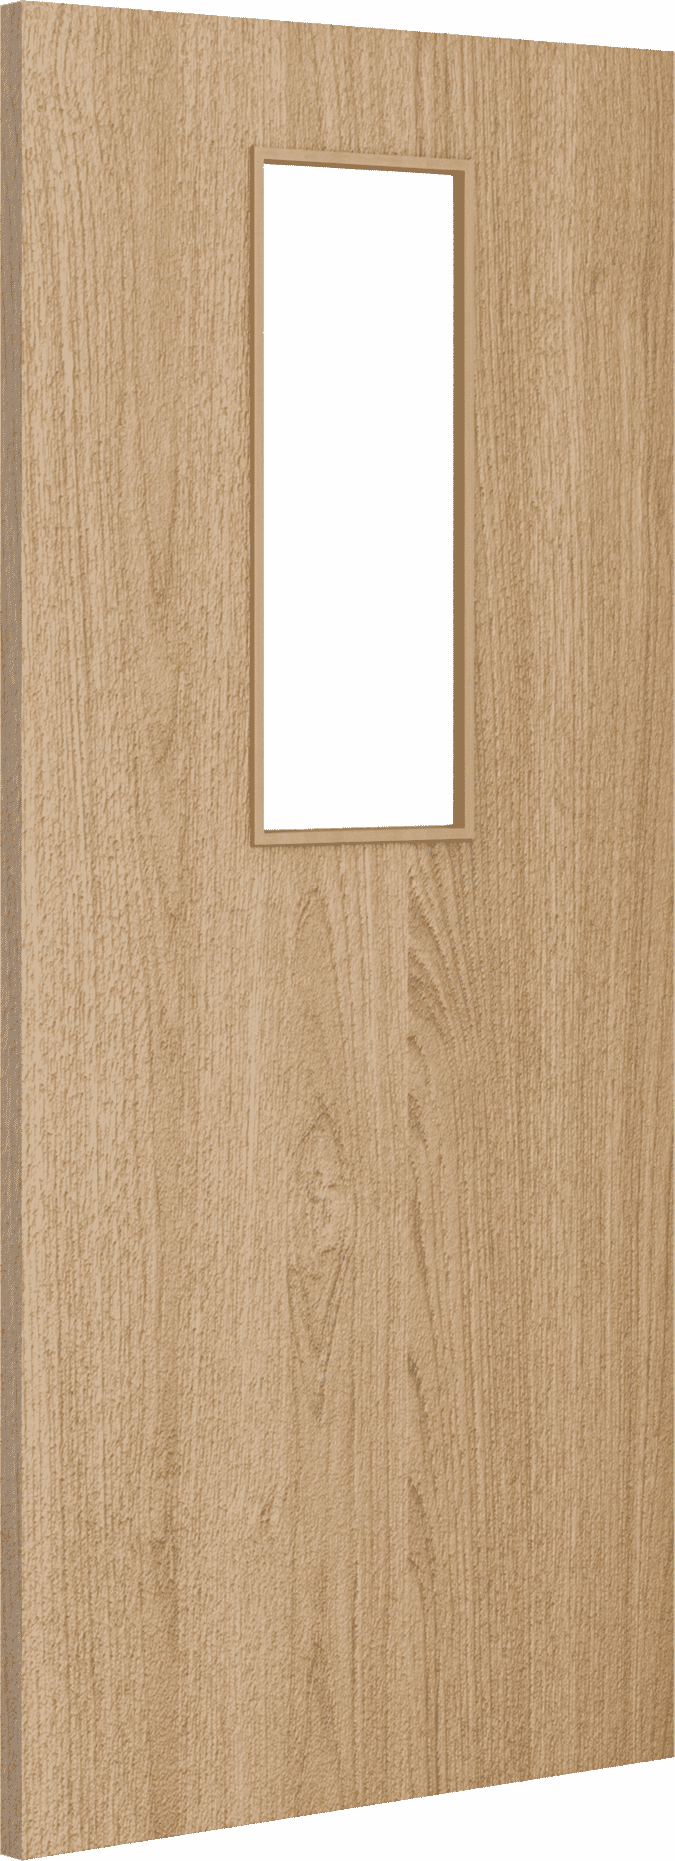 2040mm x 726mm x 44mm Architectural Oak 14 Clear Glazed - Prefinished FD30 Fire Door Blank